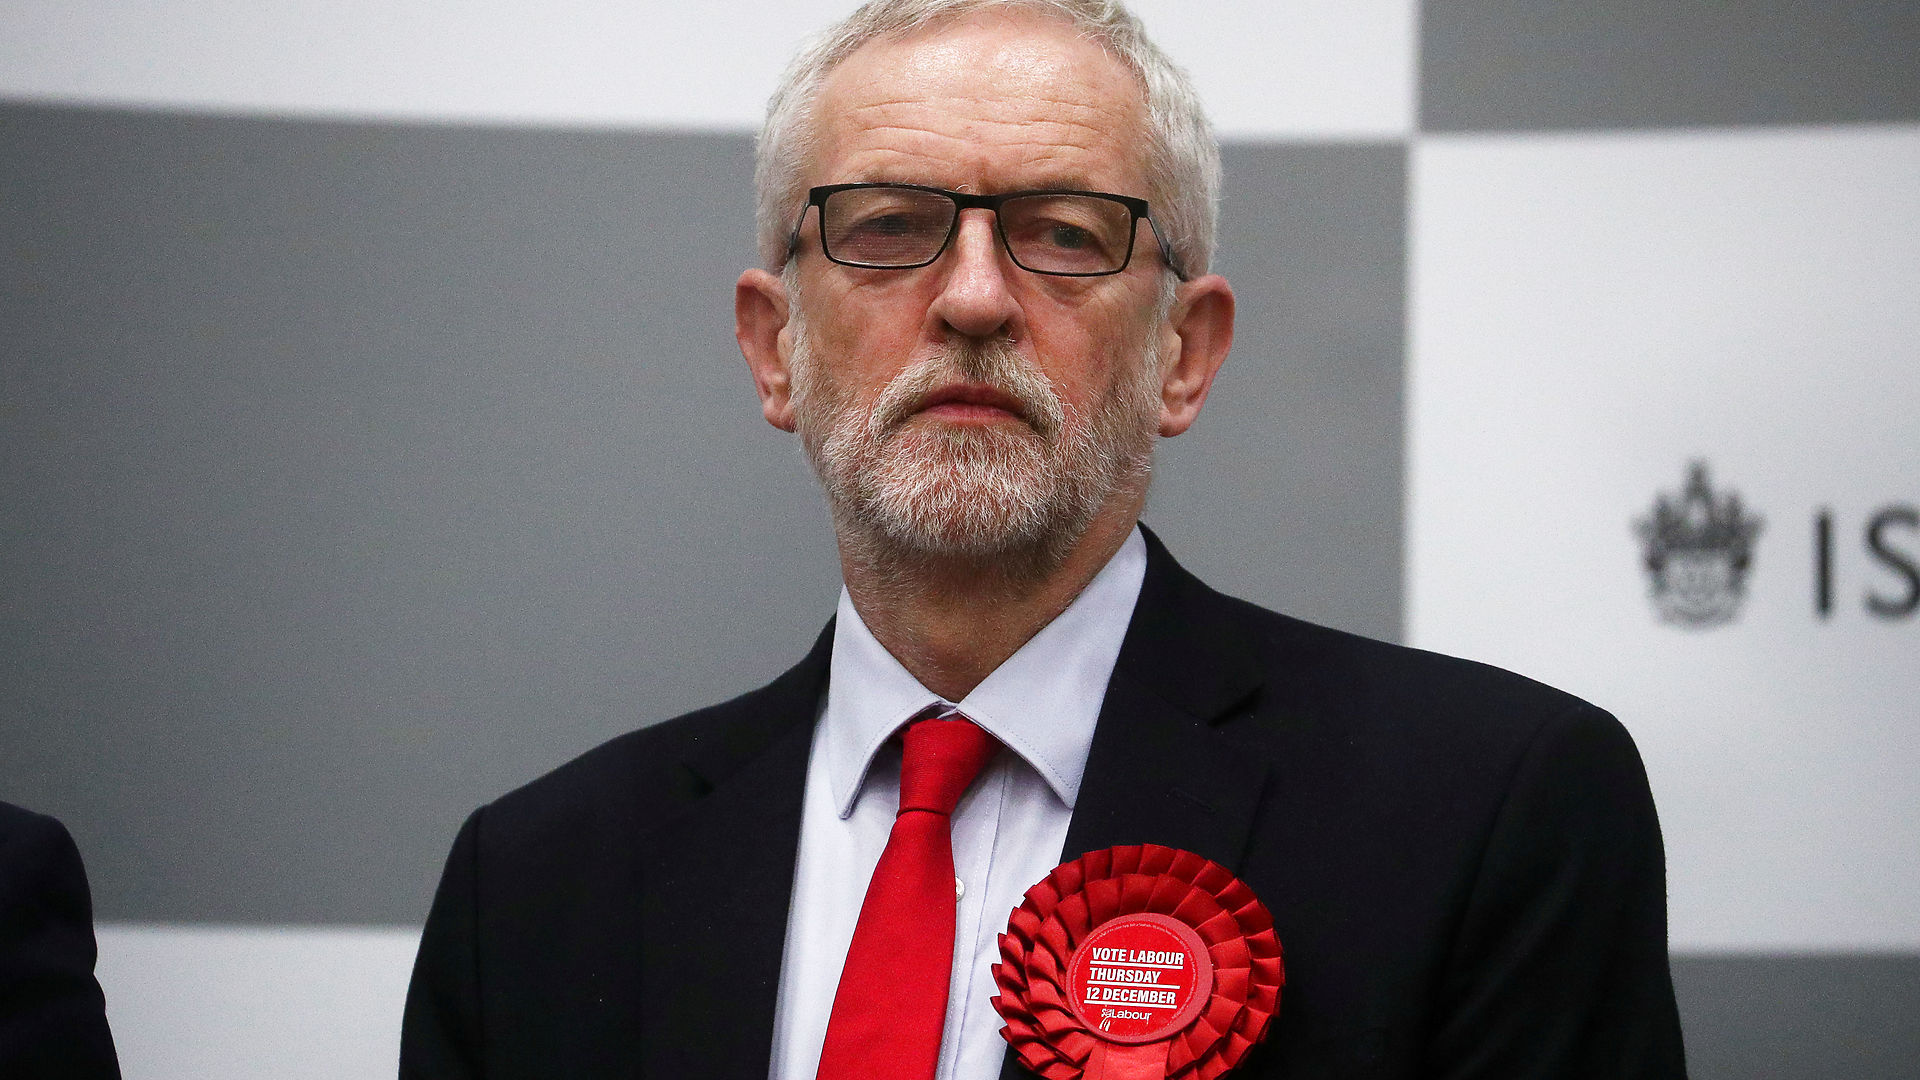 Markus Giessing: Mediernes smædekampagne mod Corbyn var afgørende for Labours katastrofale valgnederlag